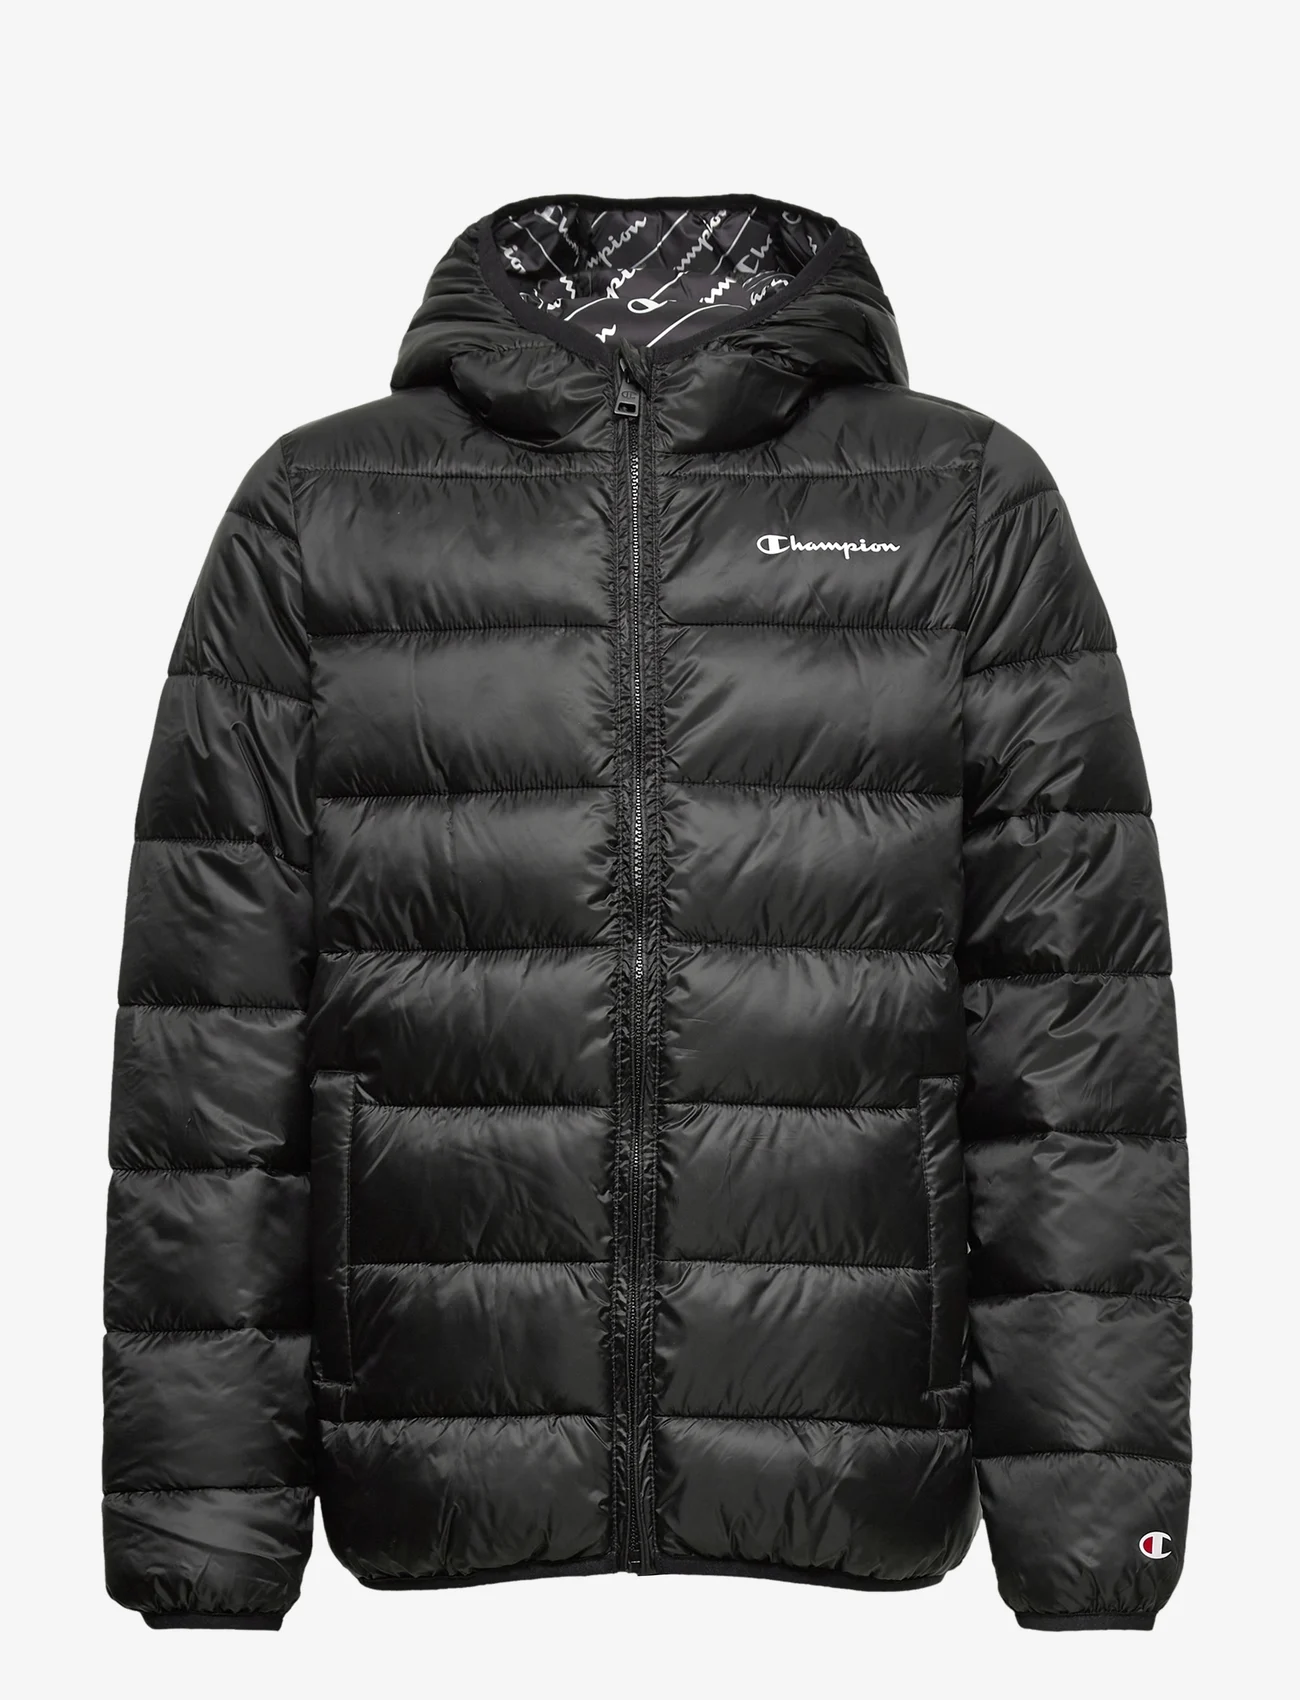 Champion - Hooded Jacket - isolerte jakker - black beauty a - 0